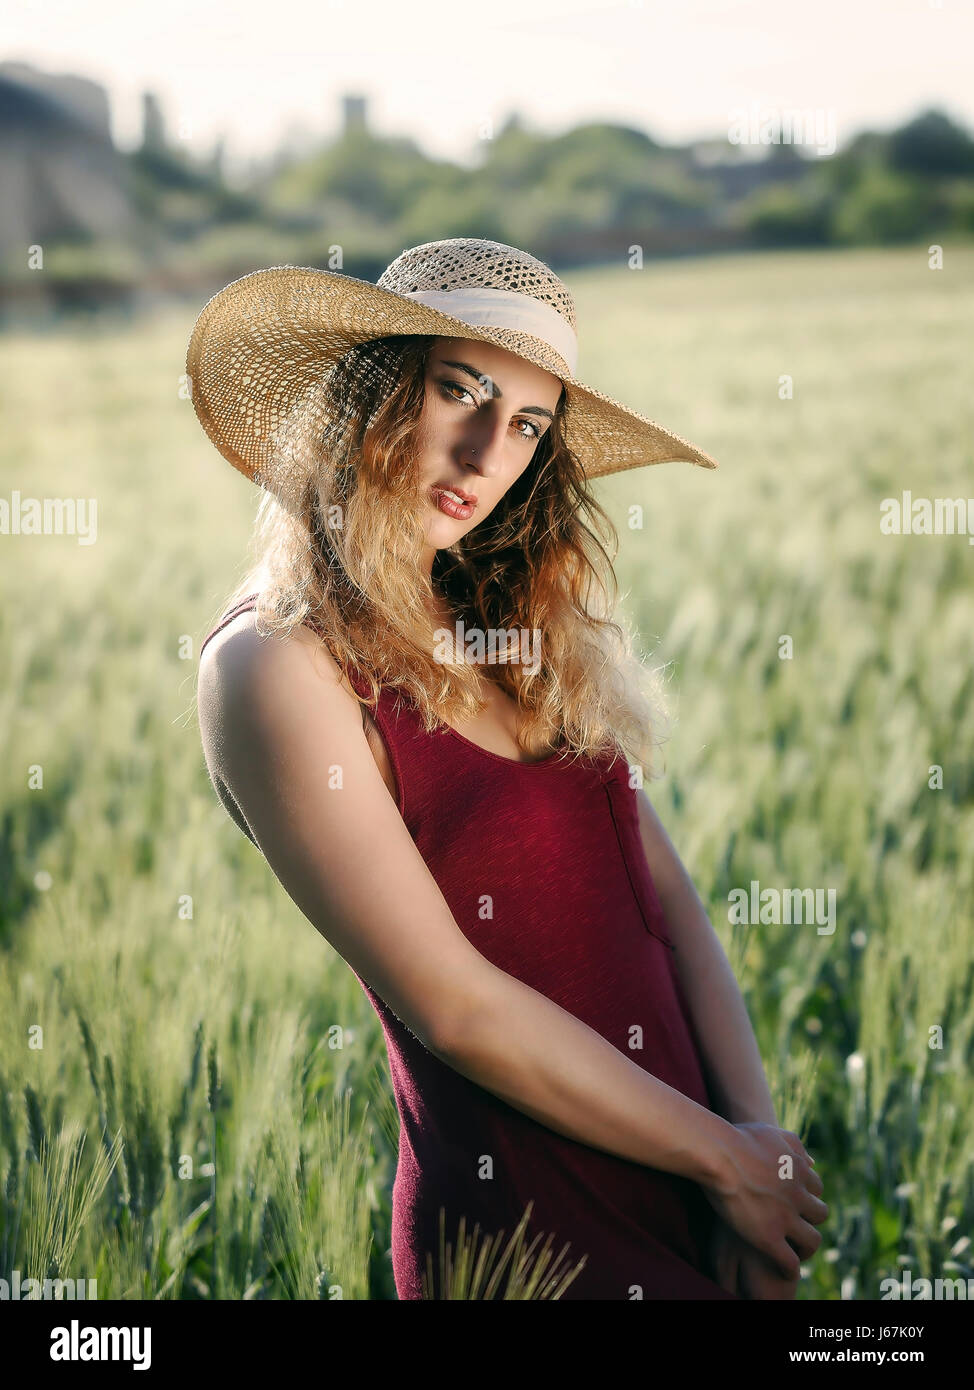 Blonde Mädchen im Freien. Mit Hut und roten Kleid im Weizenfeld. Hintergrundbeleuchtung. Stockfoto